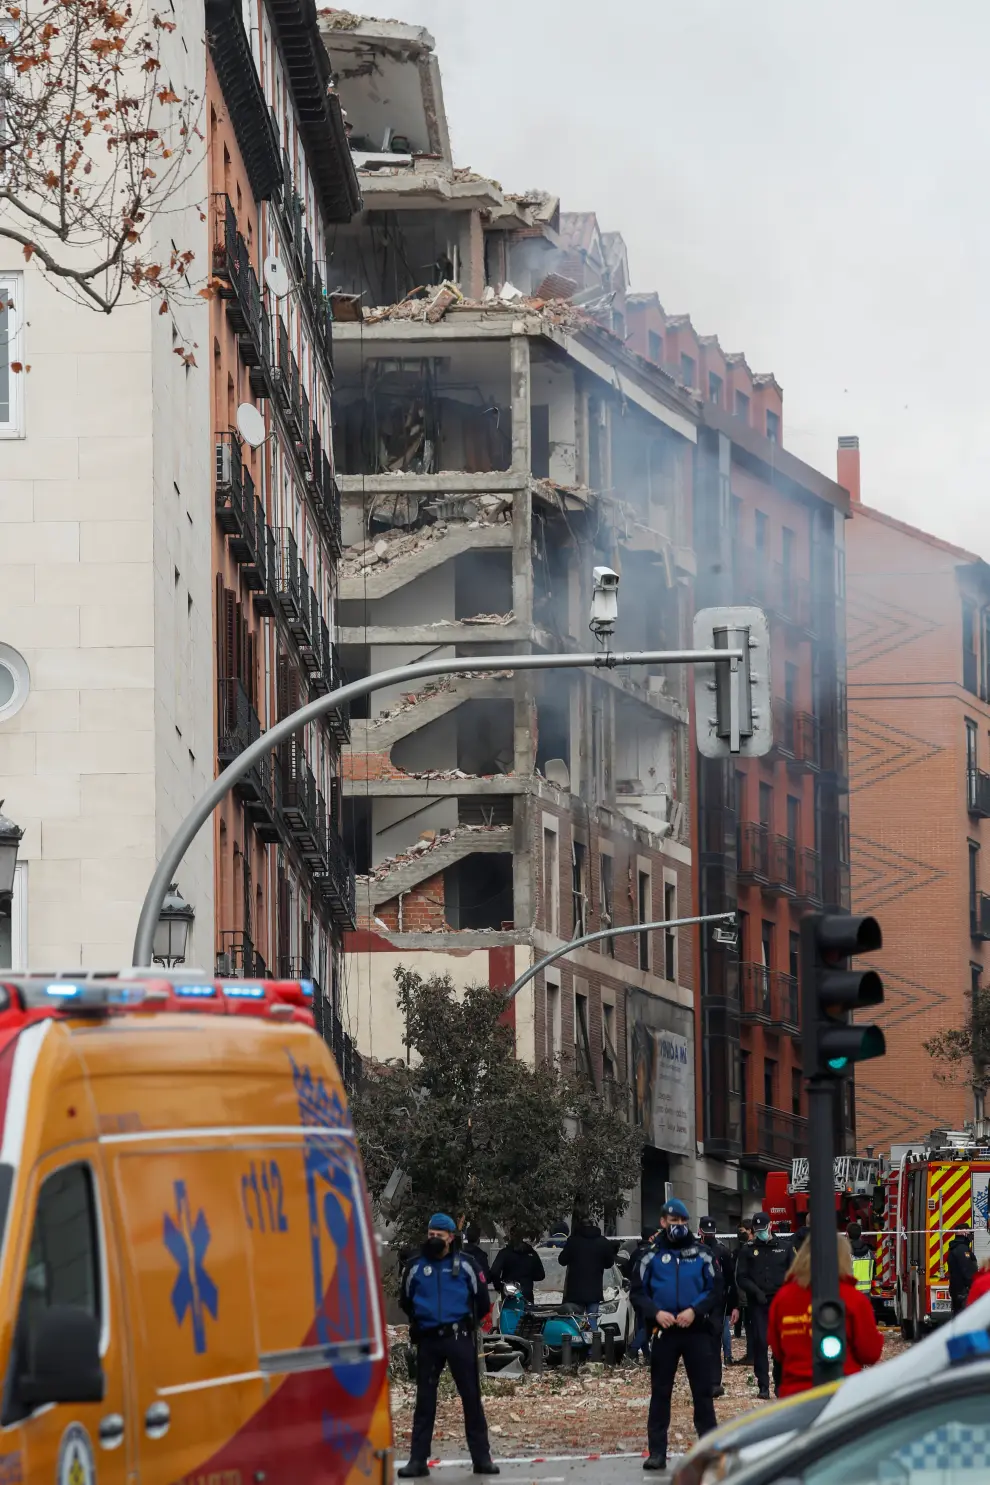 Fuerte explosión en un edificio de Madrid